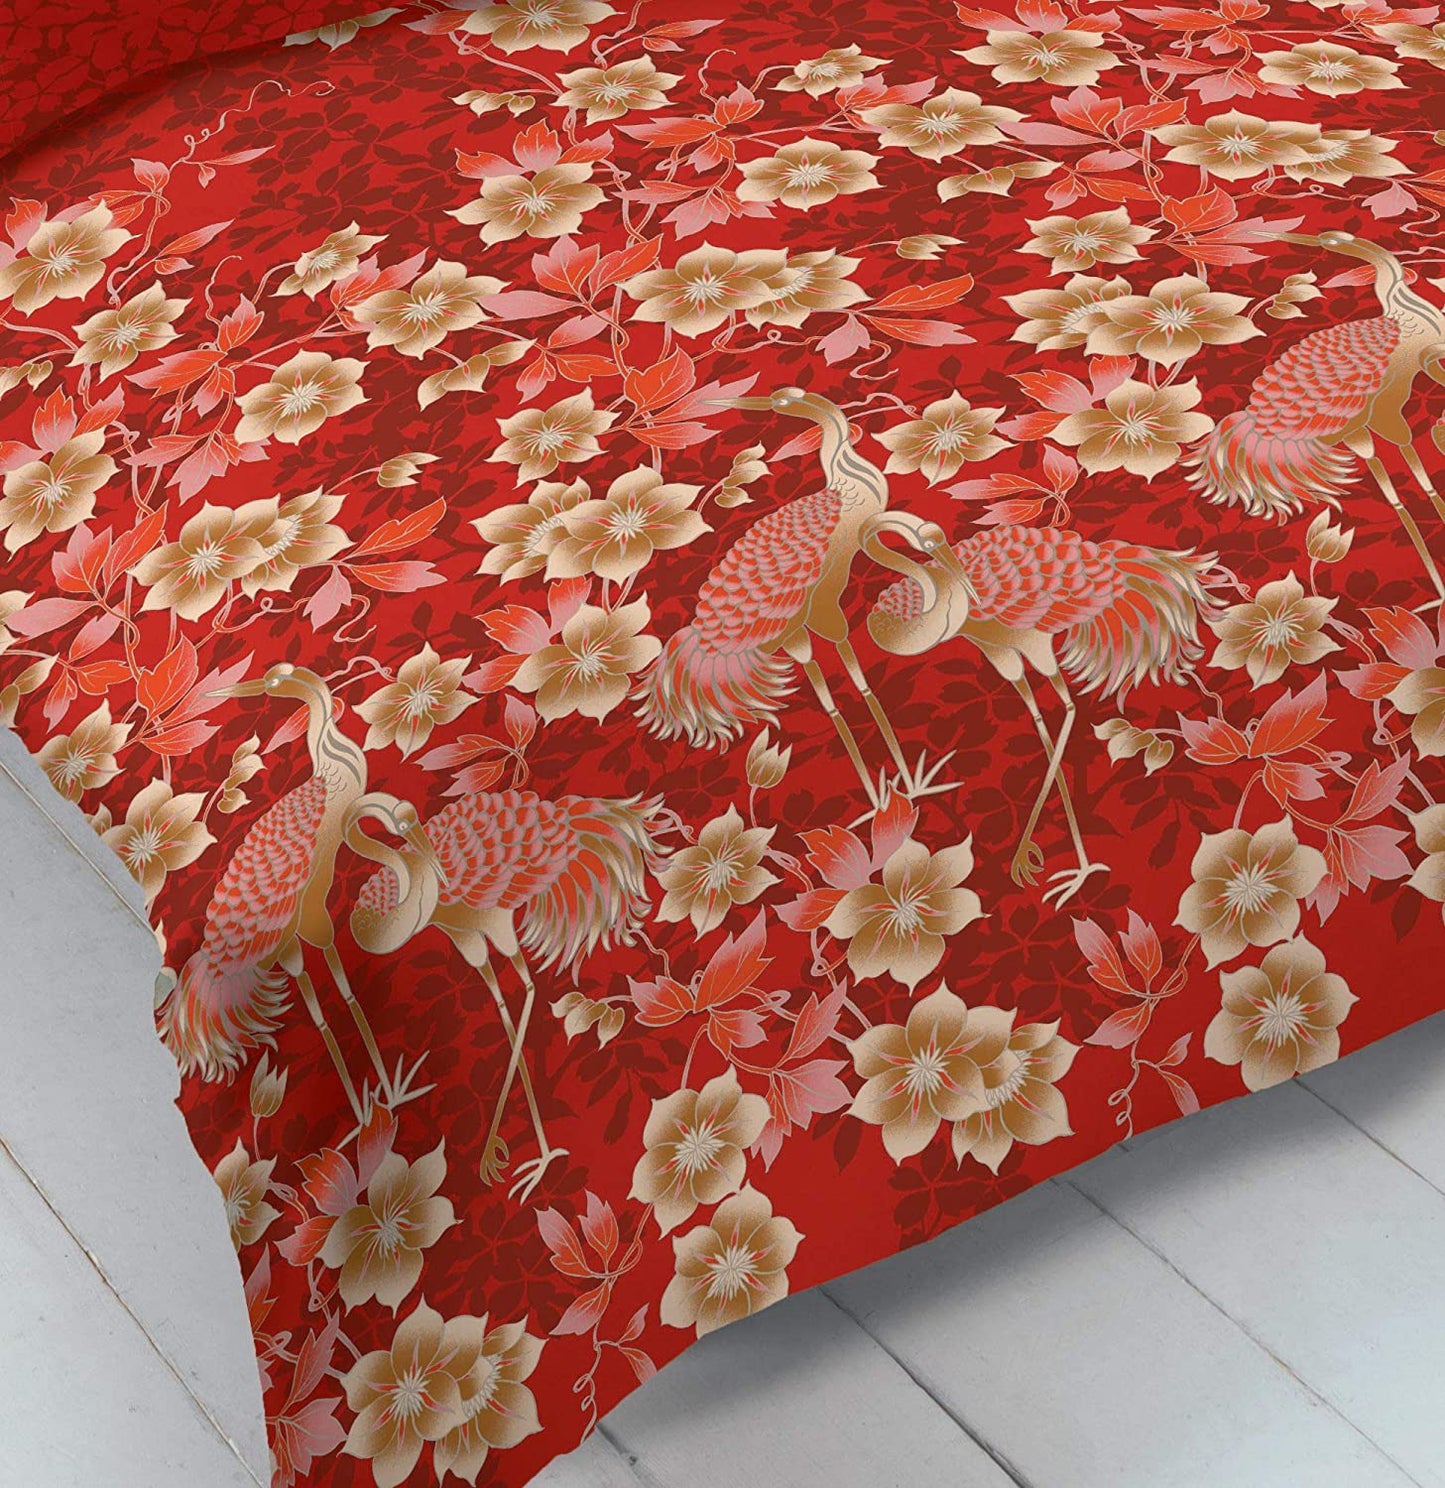 Single Bed Duvet Cover Set Heron Red Floral